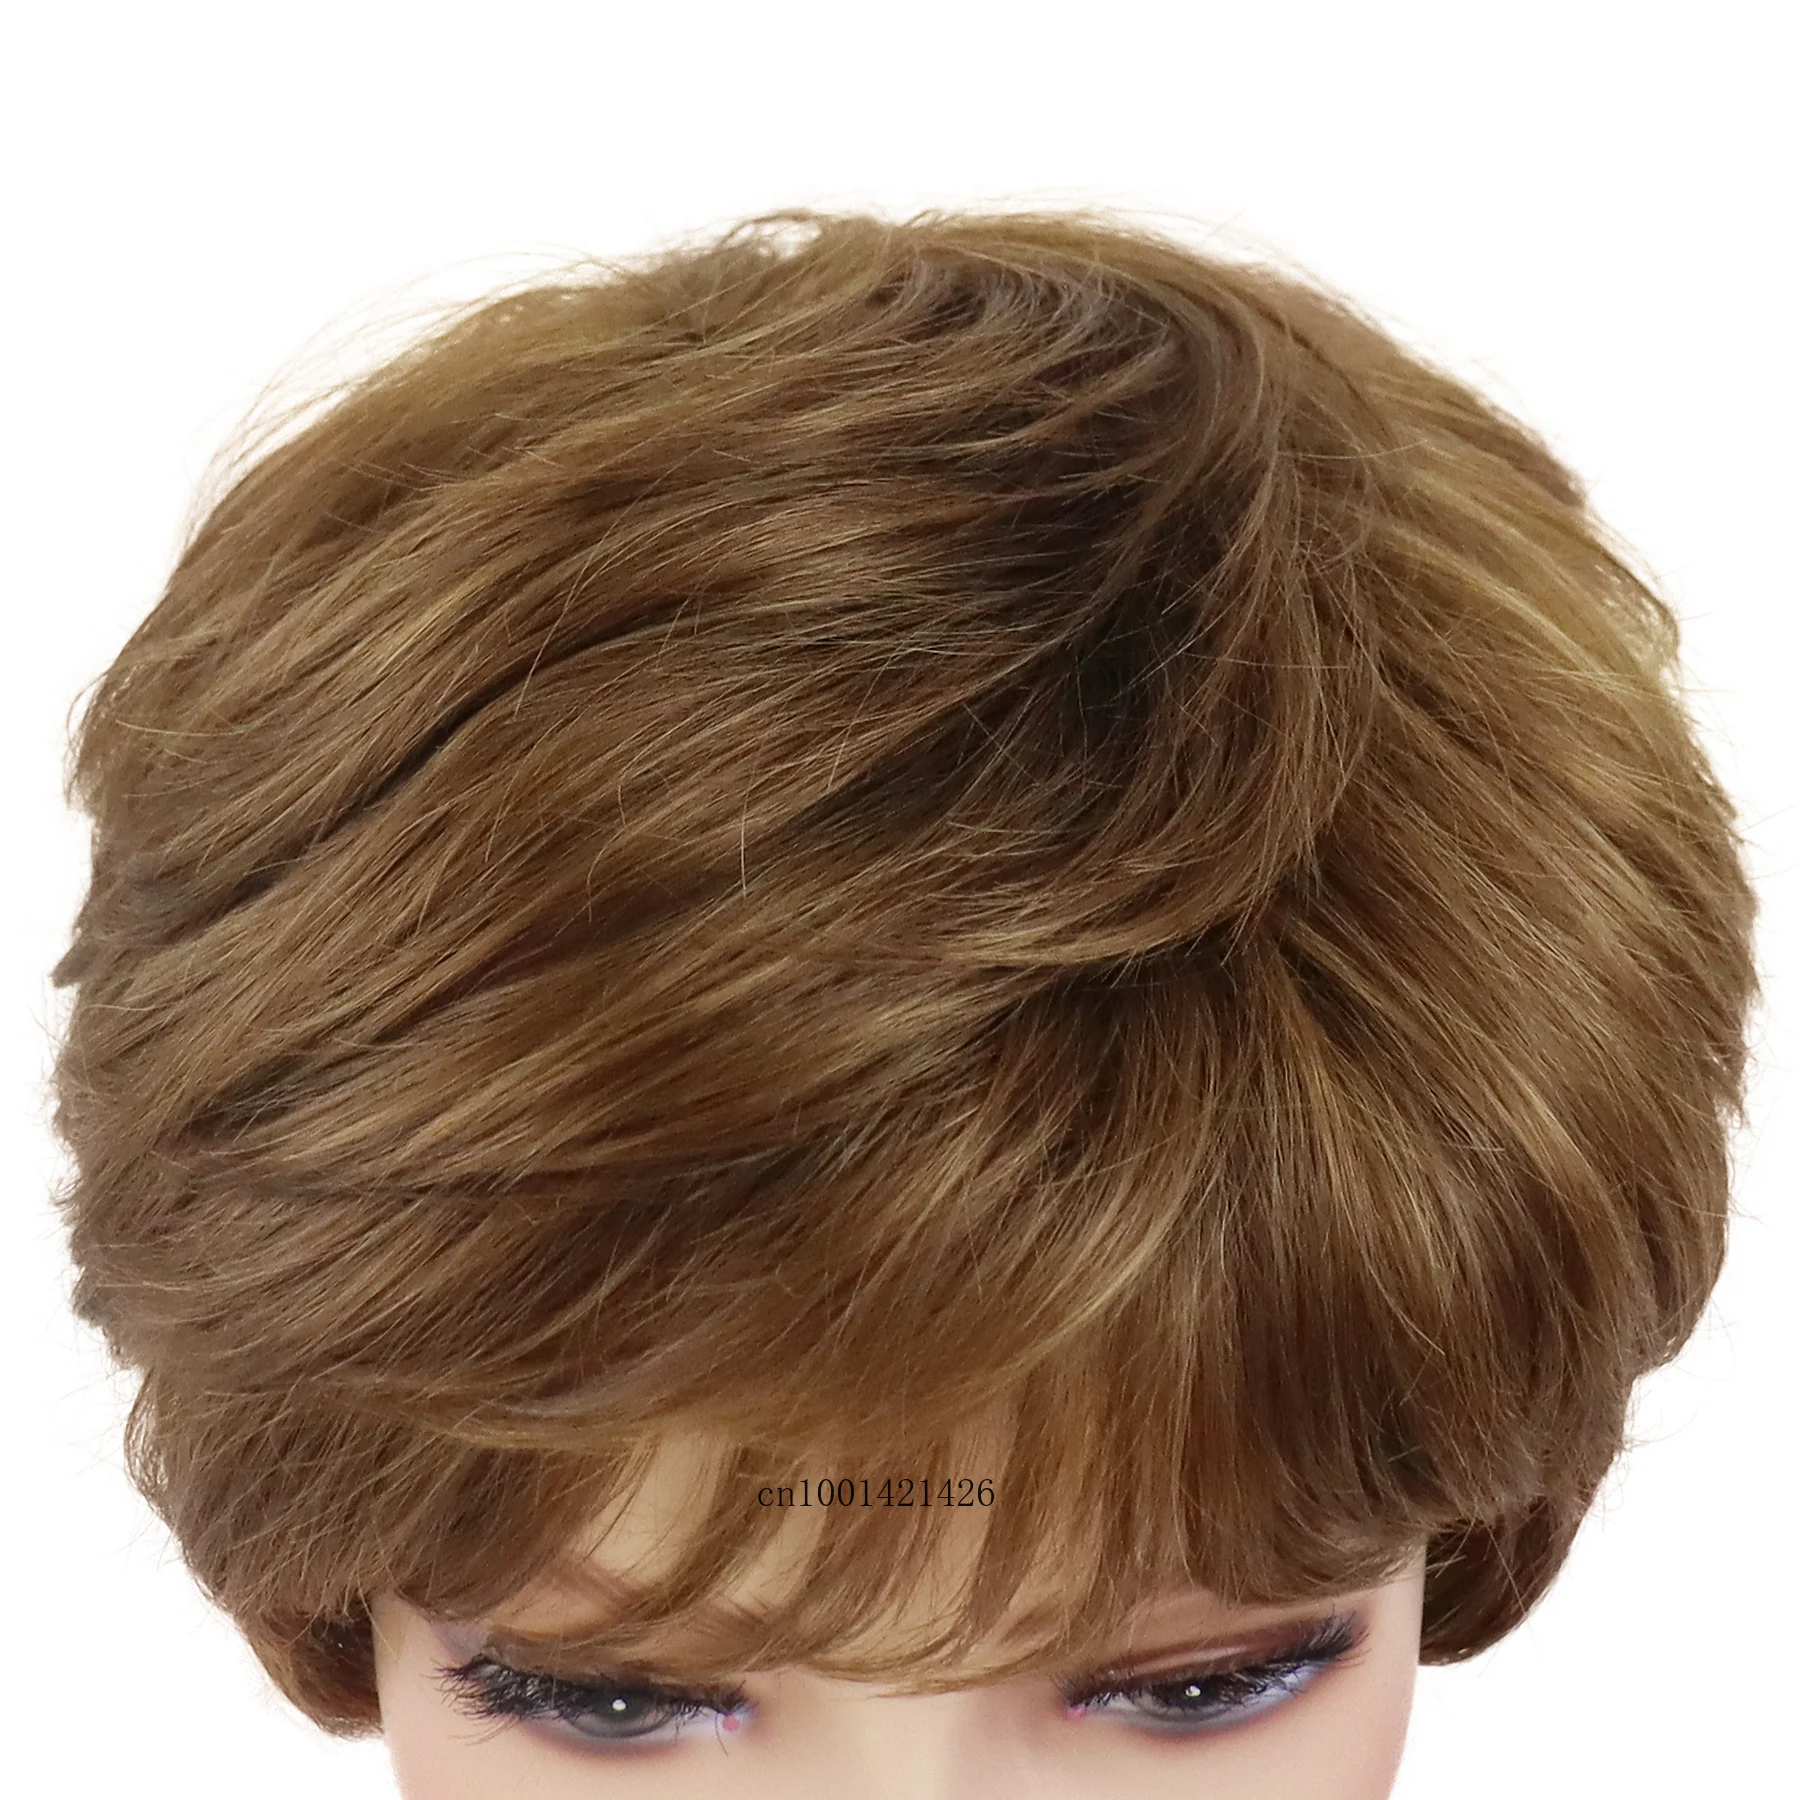 שיער סינתטי קצר פיות קיצוץ פאות עבור נשים טבעי תסרוקות חום פאה עם פוני אופנתי אמא הפאה מתנות זקנה תחפושת - 2